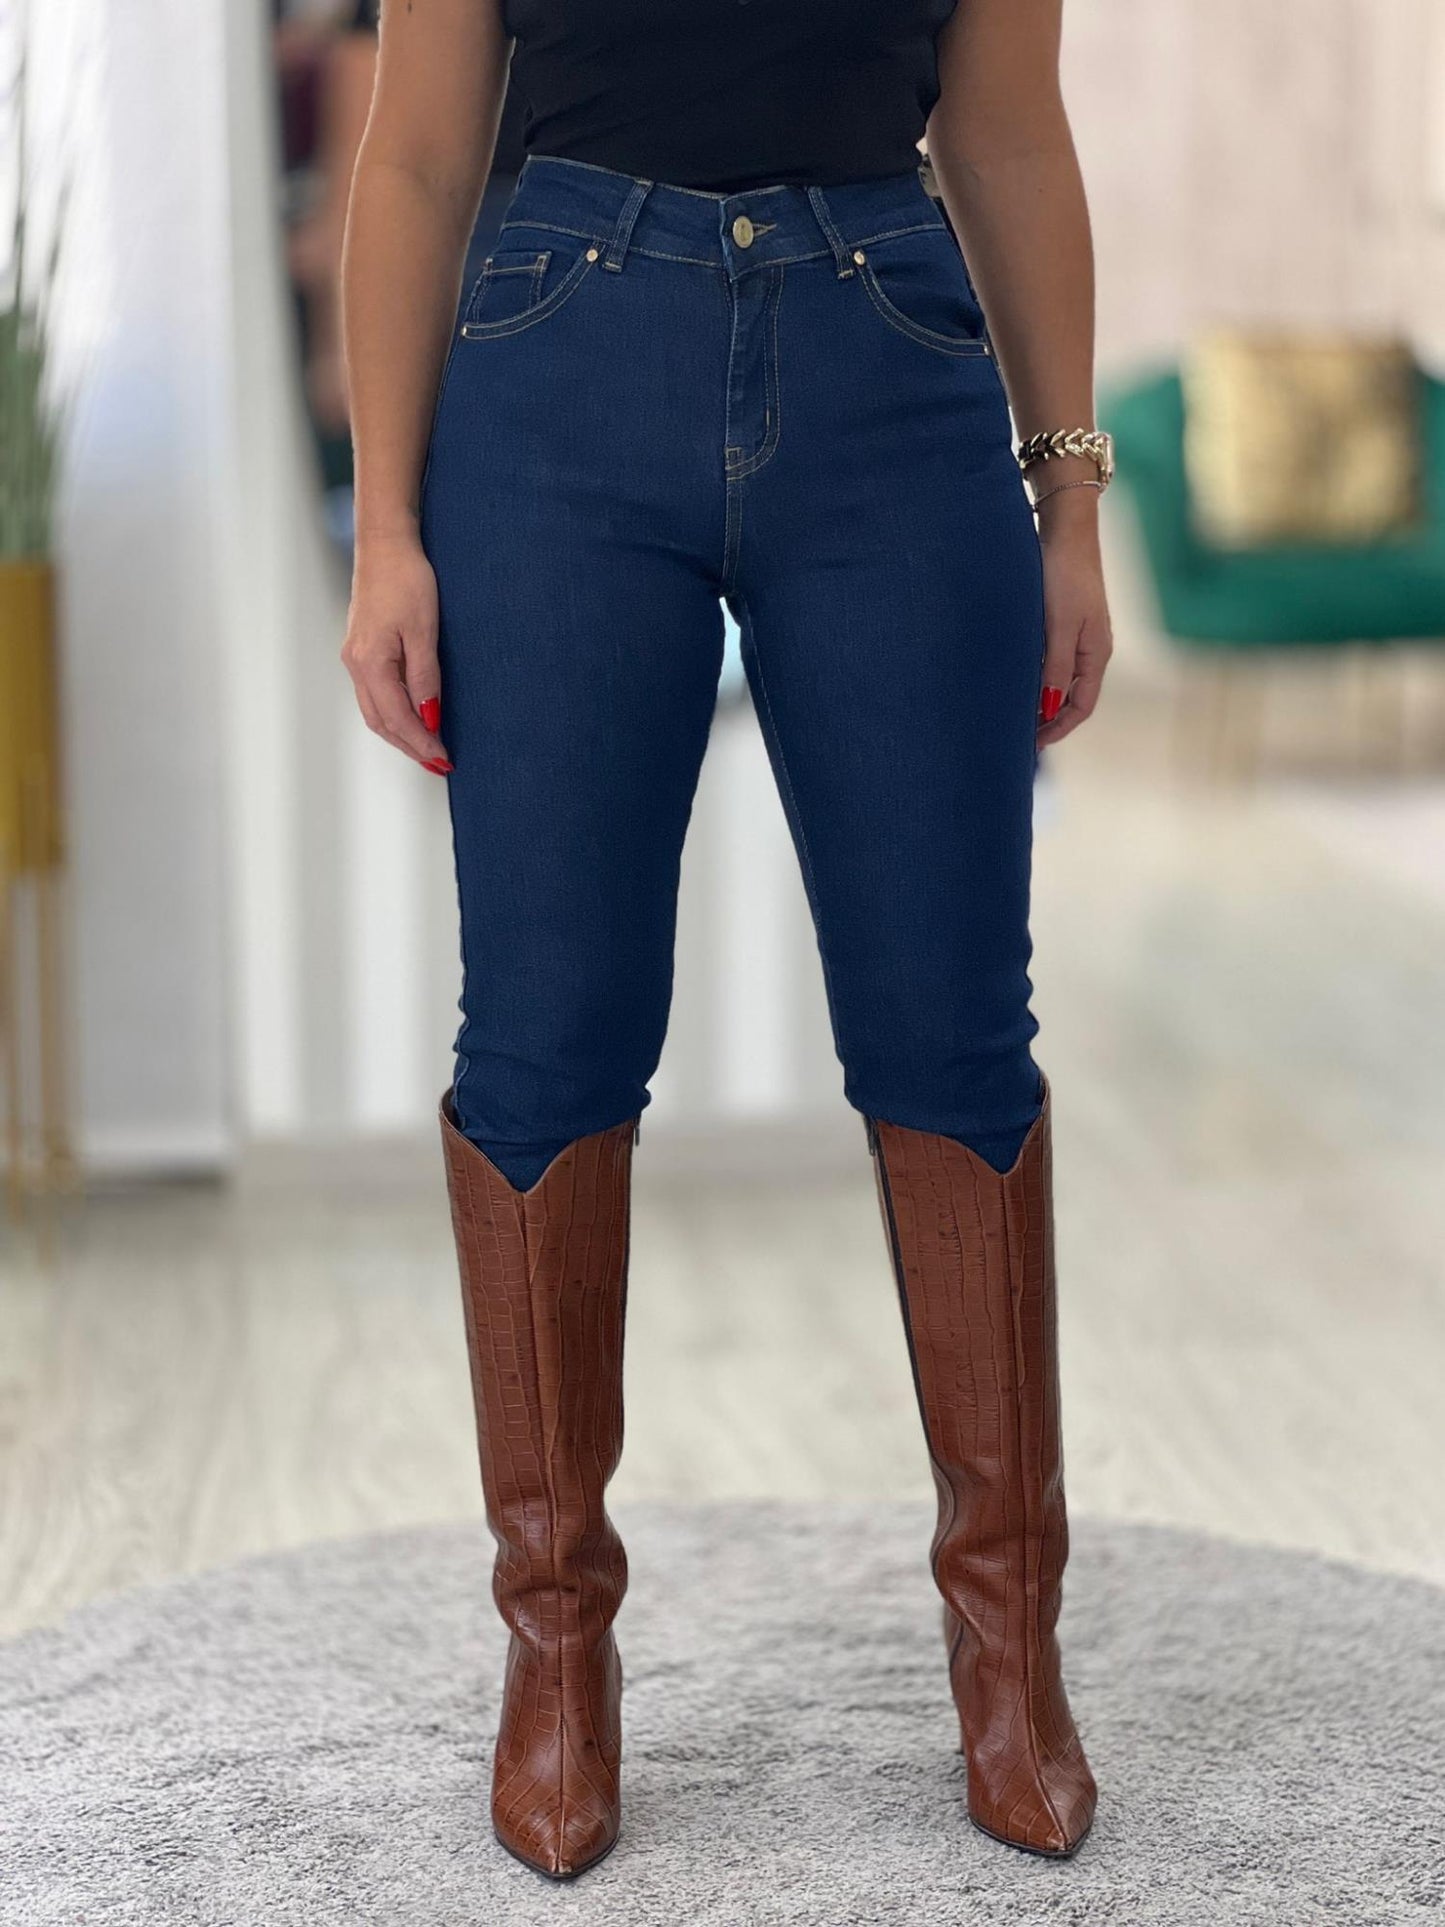 Jeans de cintura subida com pormenor bordado